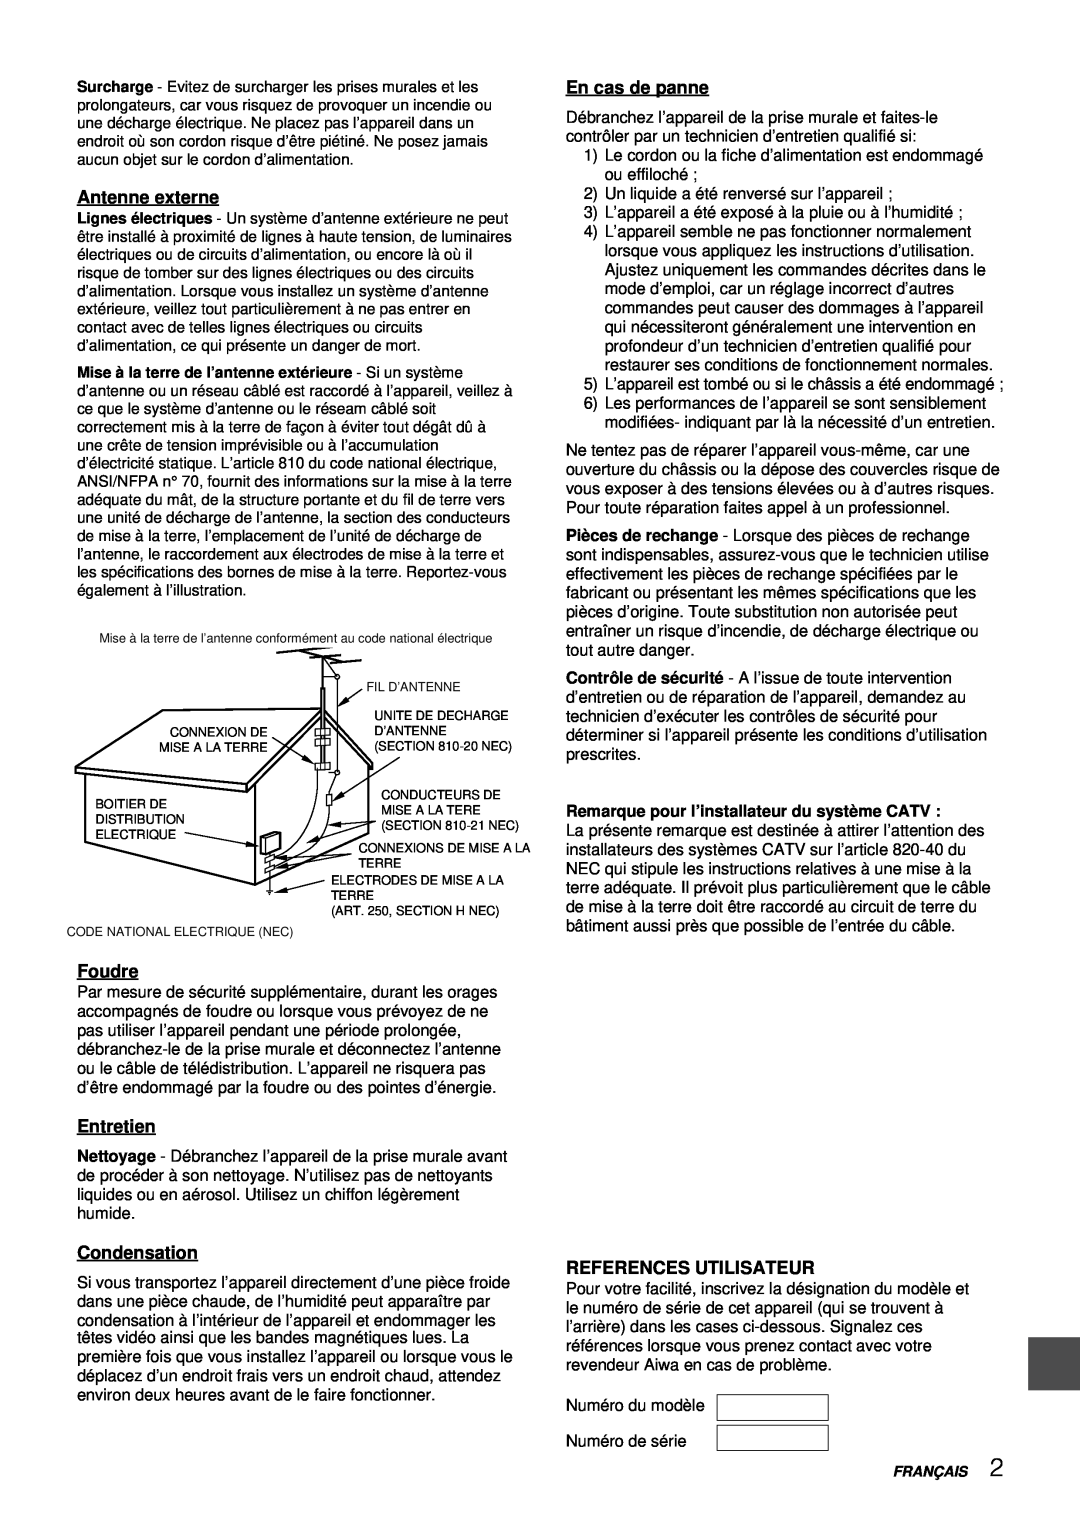 Aiwa VX-S207U, VX-S137U manual Antenne externe, En cas de panne, Foudre, Entretien, Condensation, References Utilisateur 